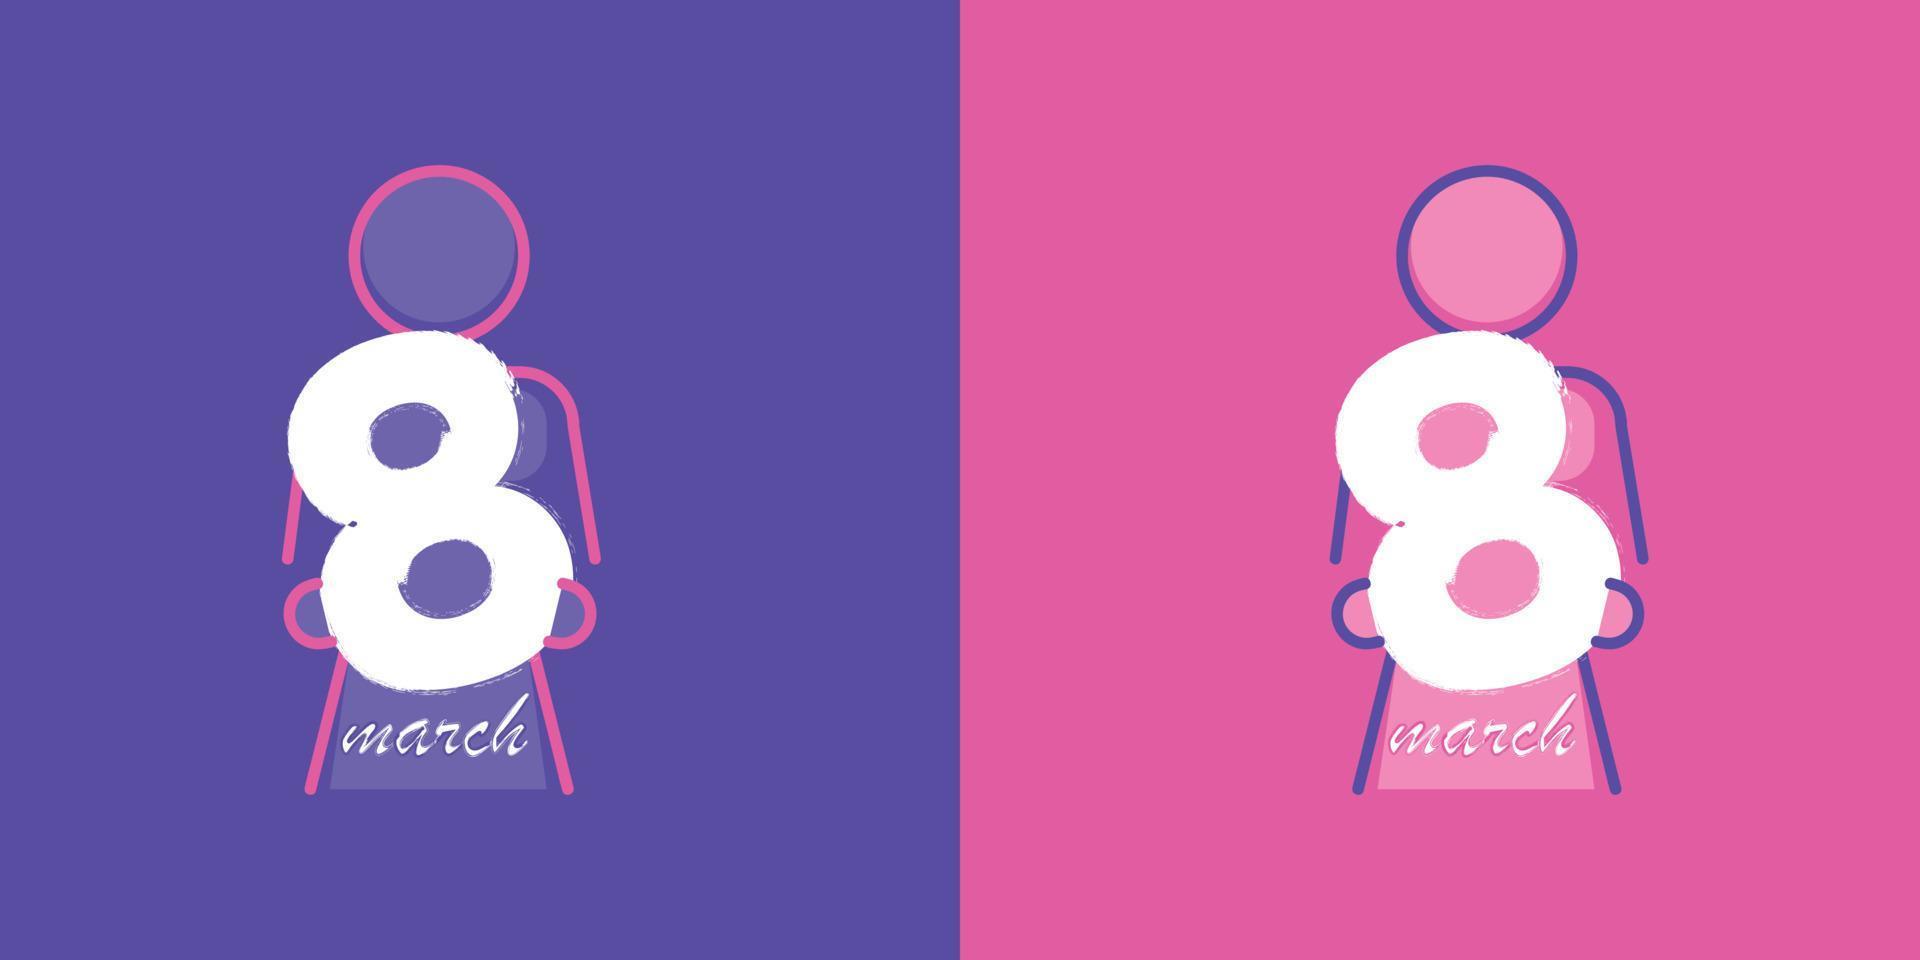 la figure 8 est une femme debout dans sa main, un logo moderne et un design d'affiche. ensemble de logo de conception de la journée internationale de la femme du 8 mars dans les couleurs roses et violettes. vecteur